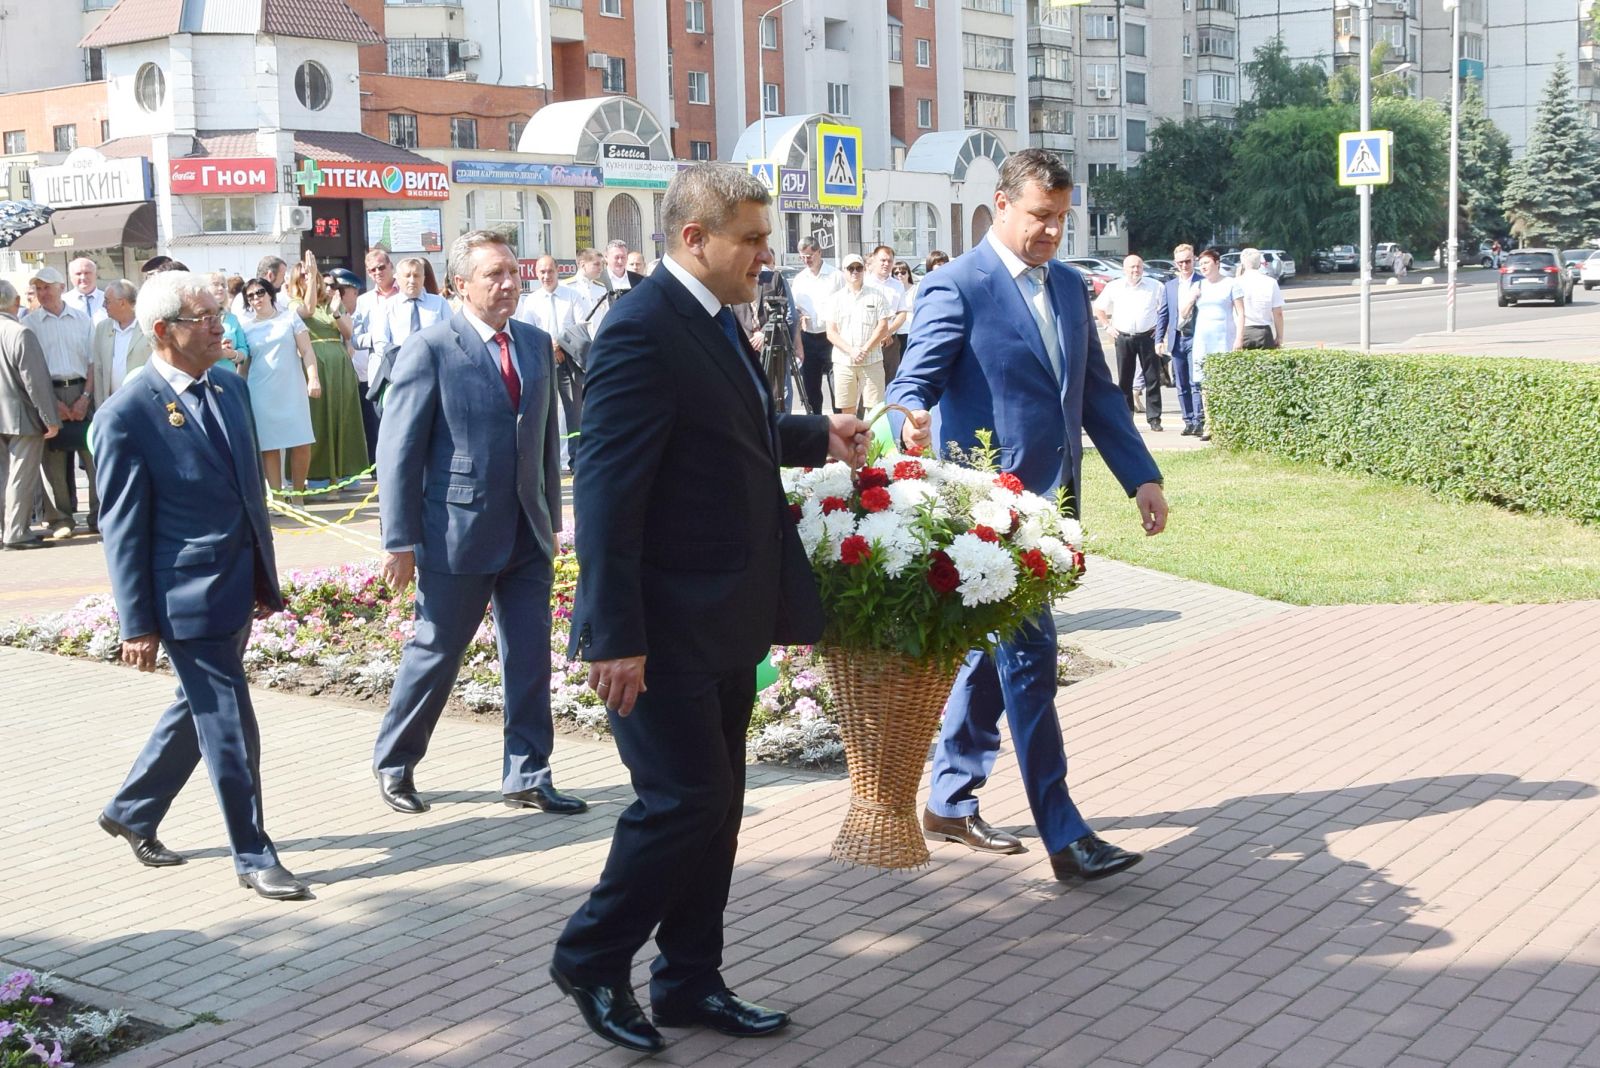 Руководители города и региона возложили цветы к памятнику Митрофану Клюеву